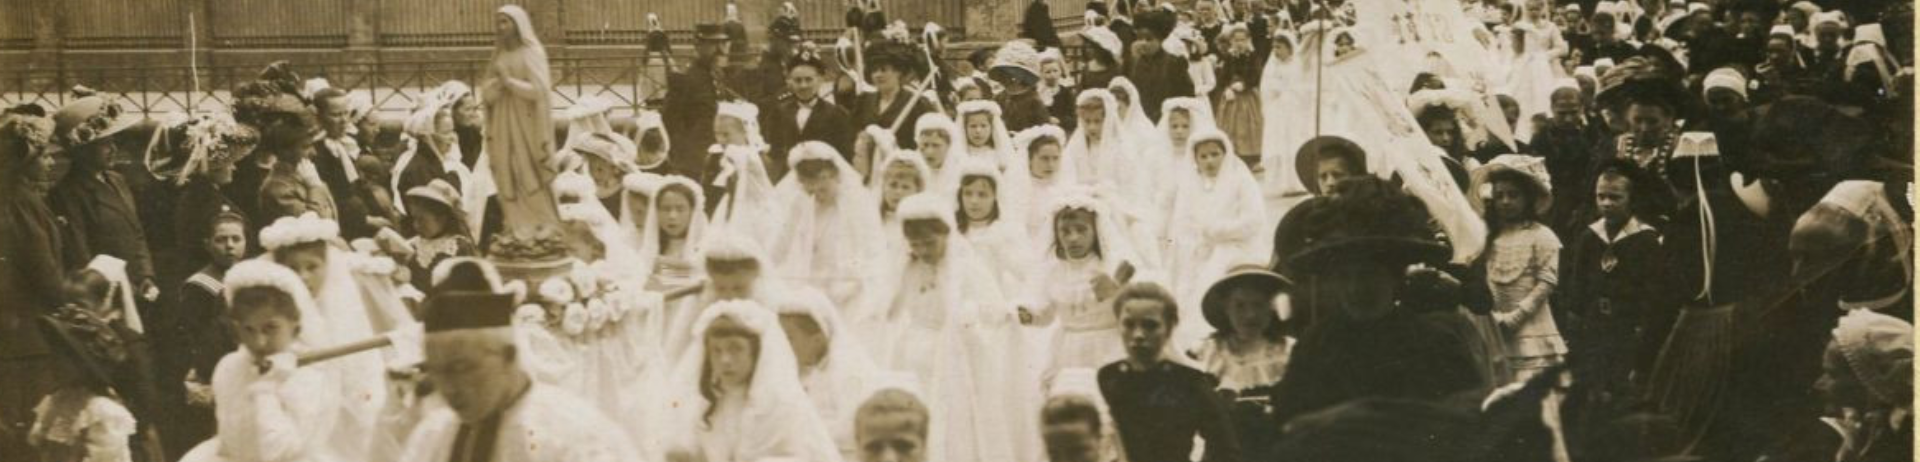 Photographie en noir et blanc d'une procession de première communion à Quimper